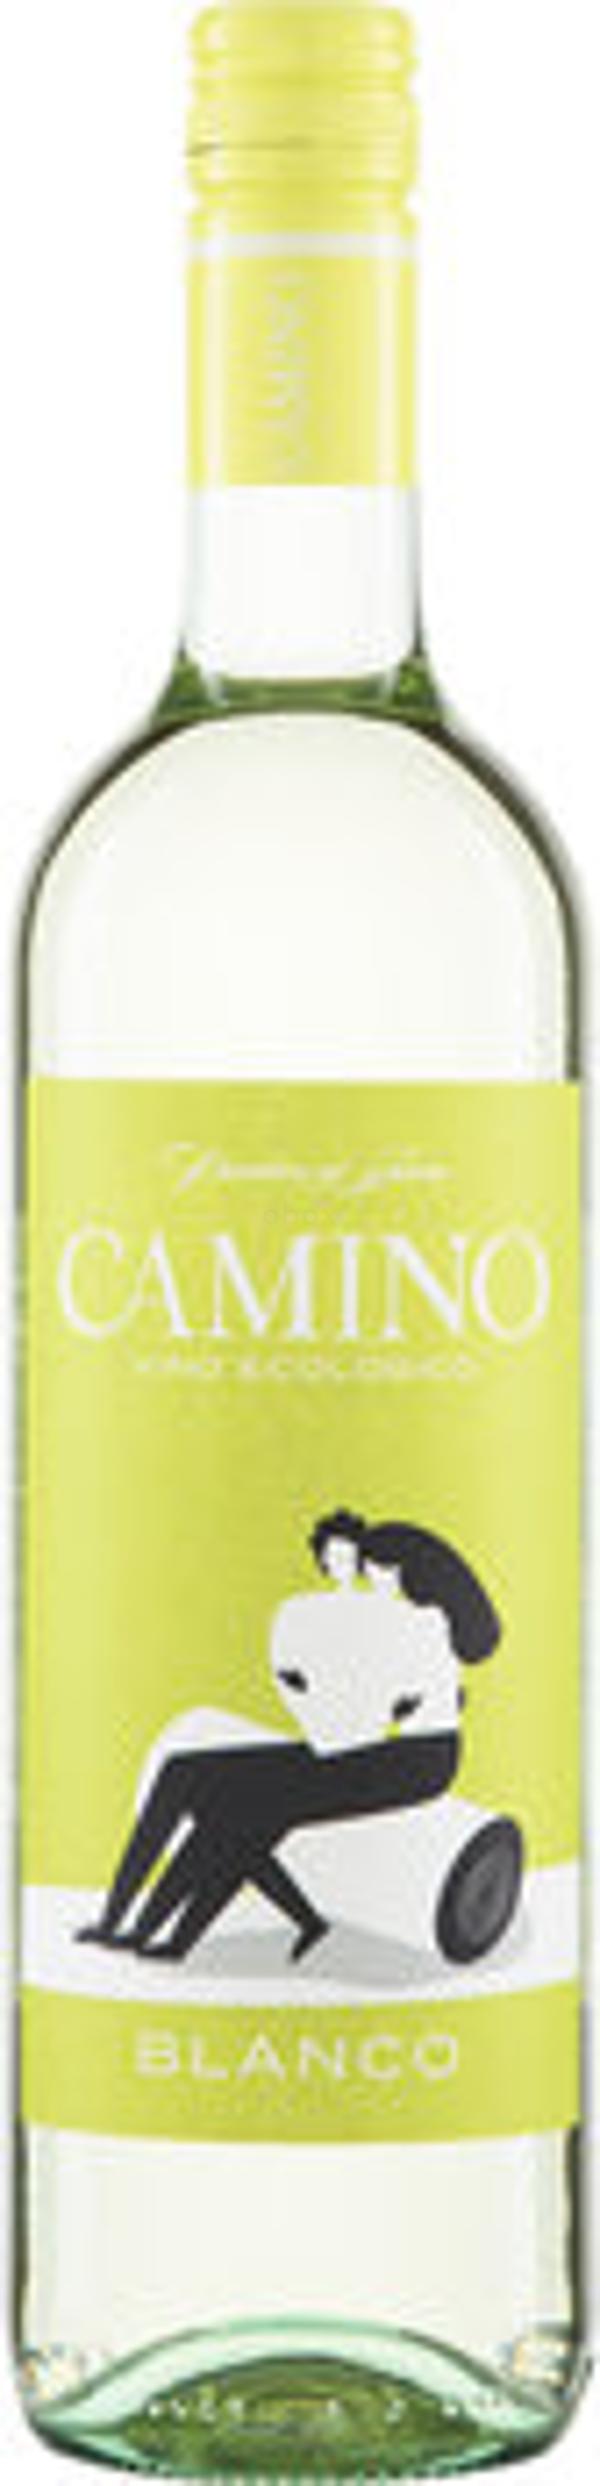 Produktfoto zu Wein Camino Blanco, Rebsorte Airen, 0,75 L, trocken